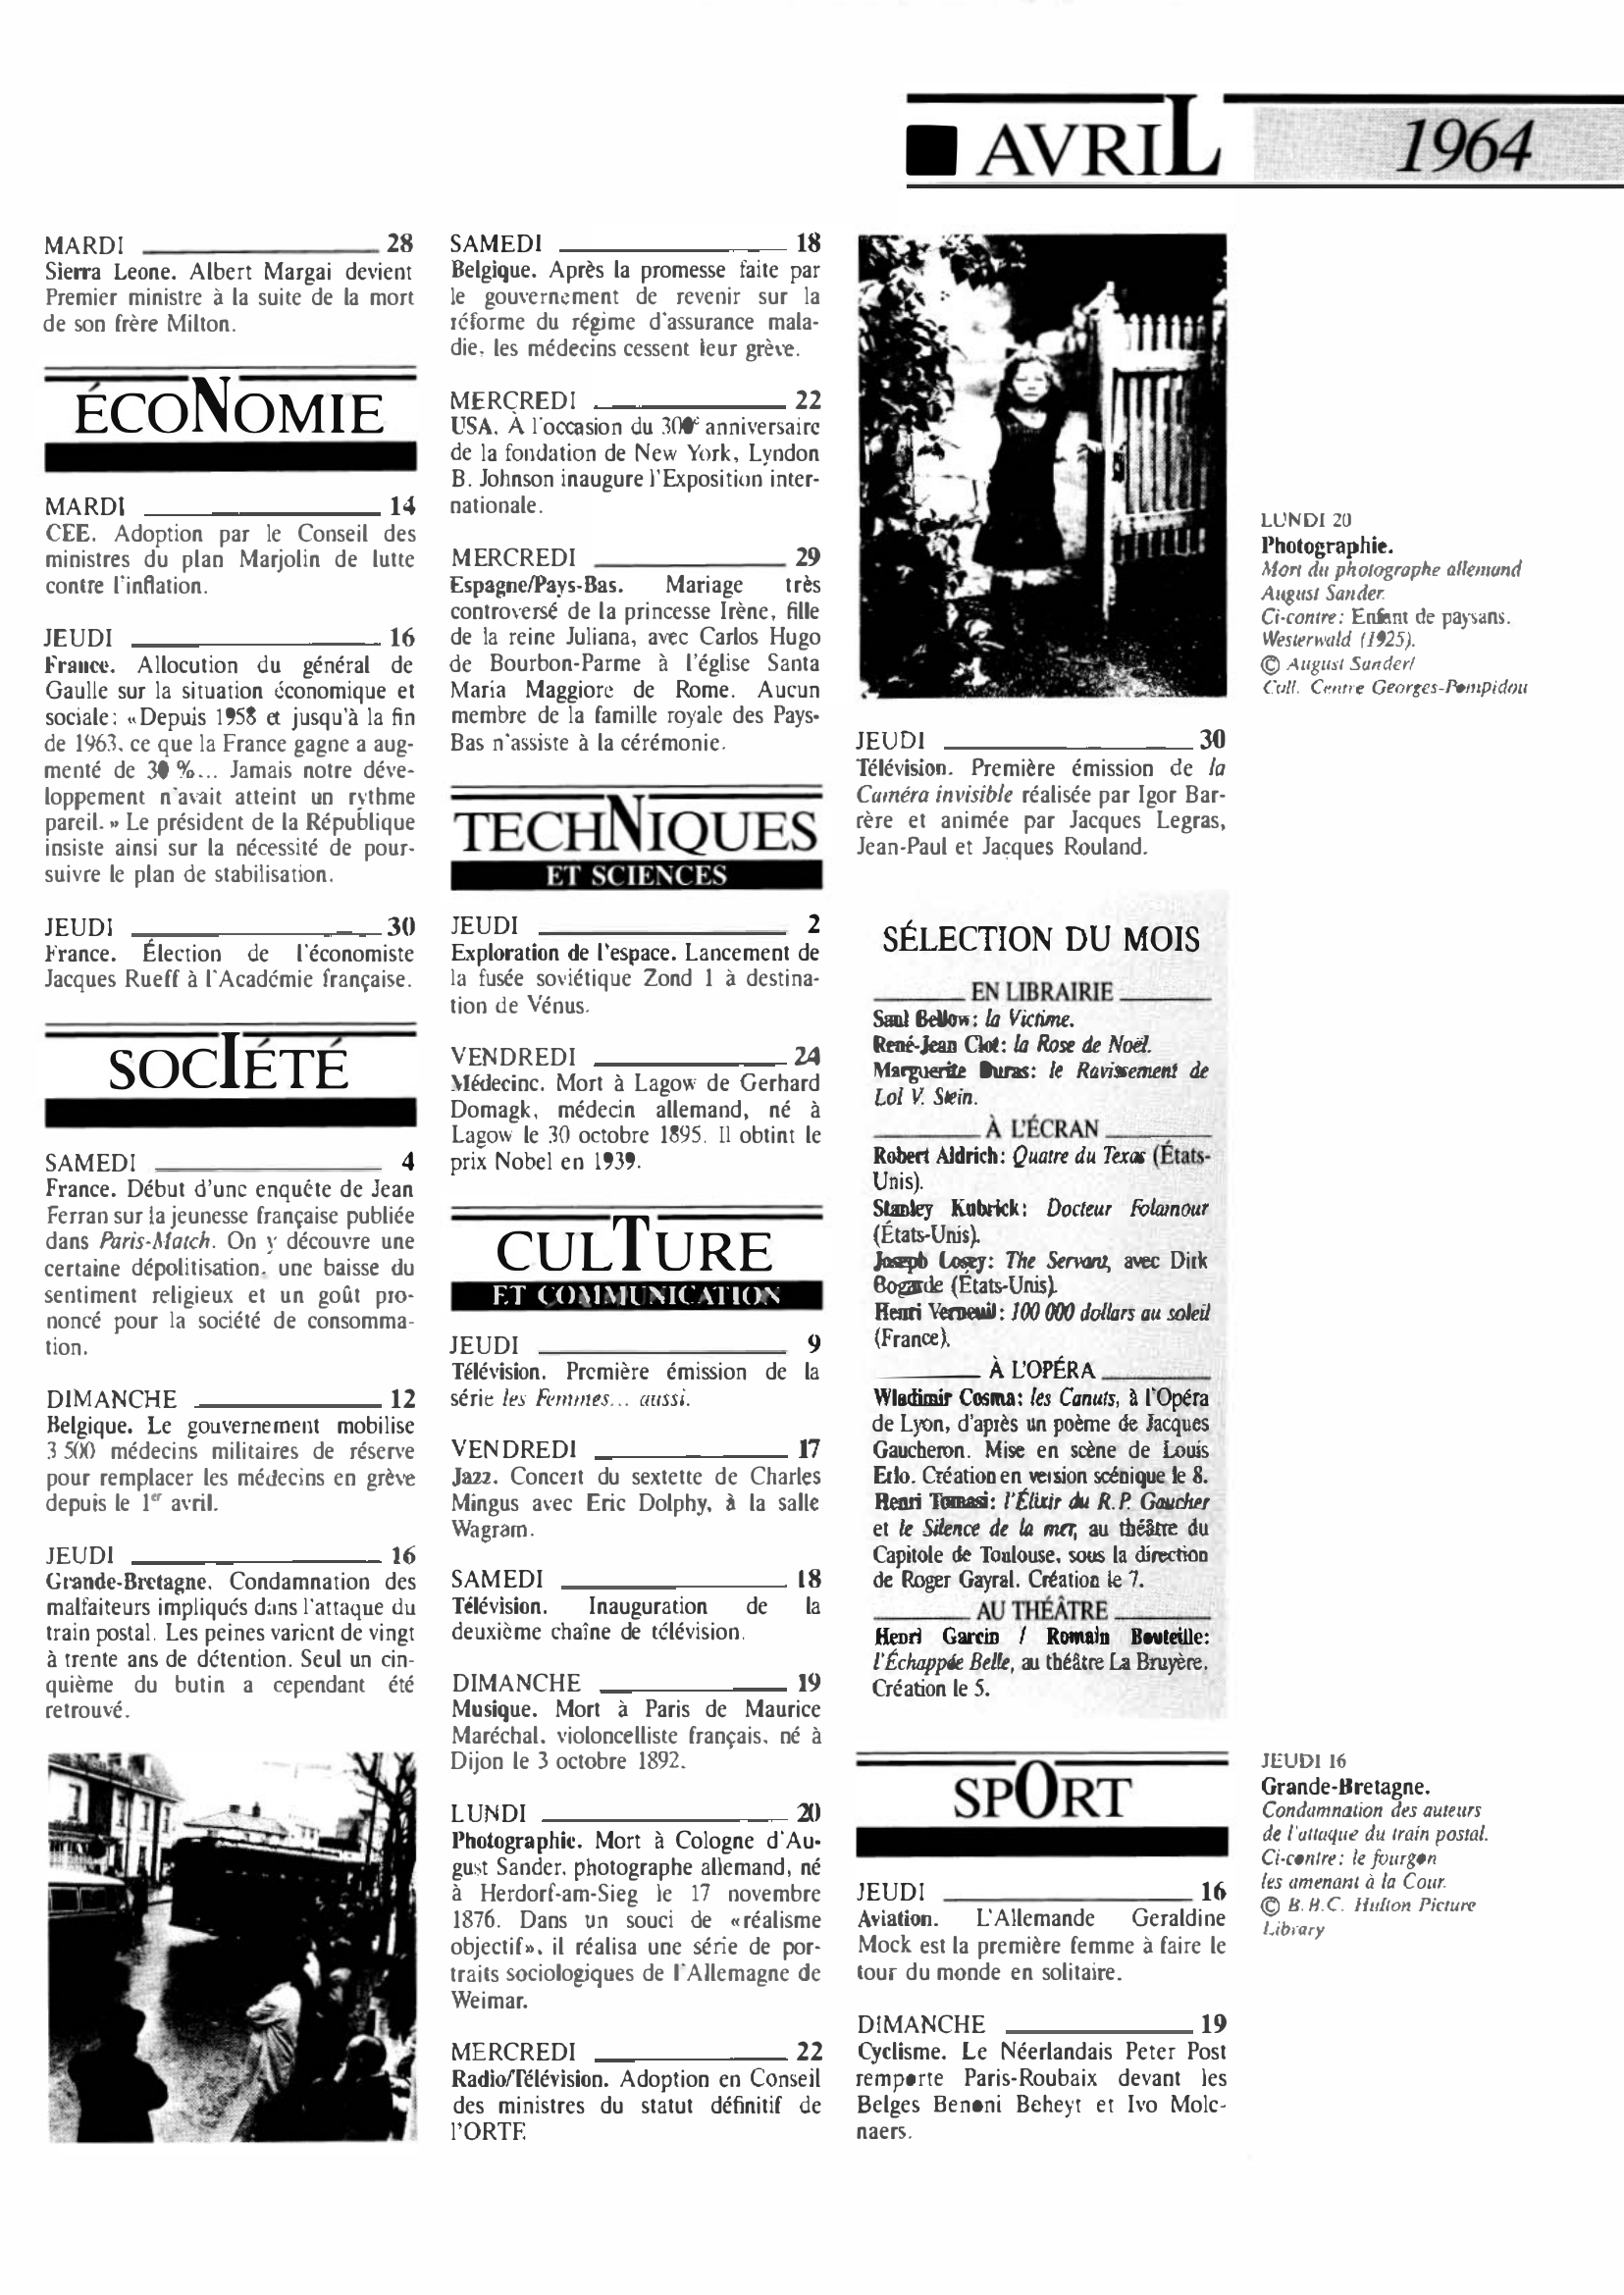 Prévisualisation du document 1964 Avril dans le monde (histoire chronologique)